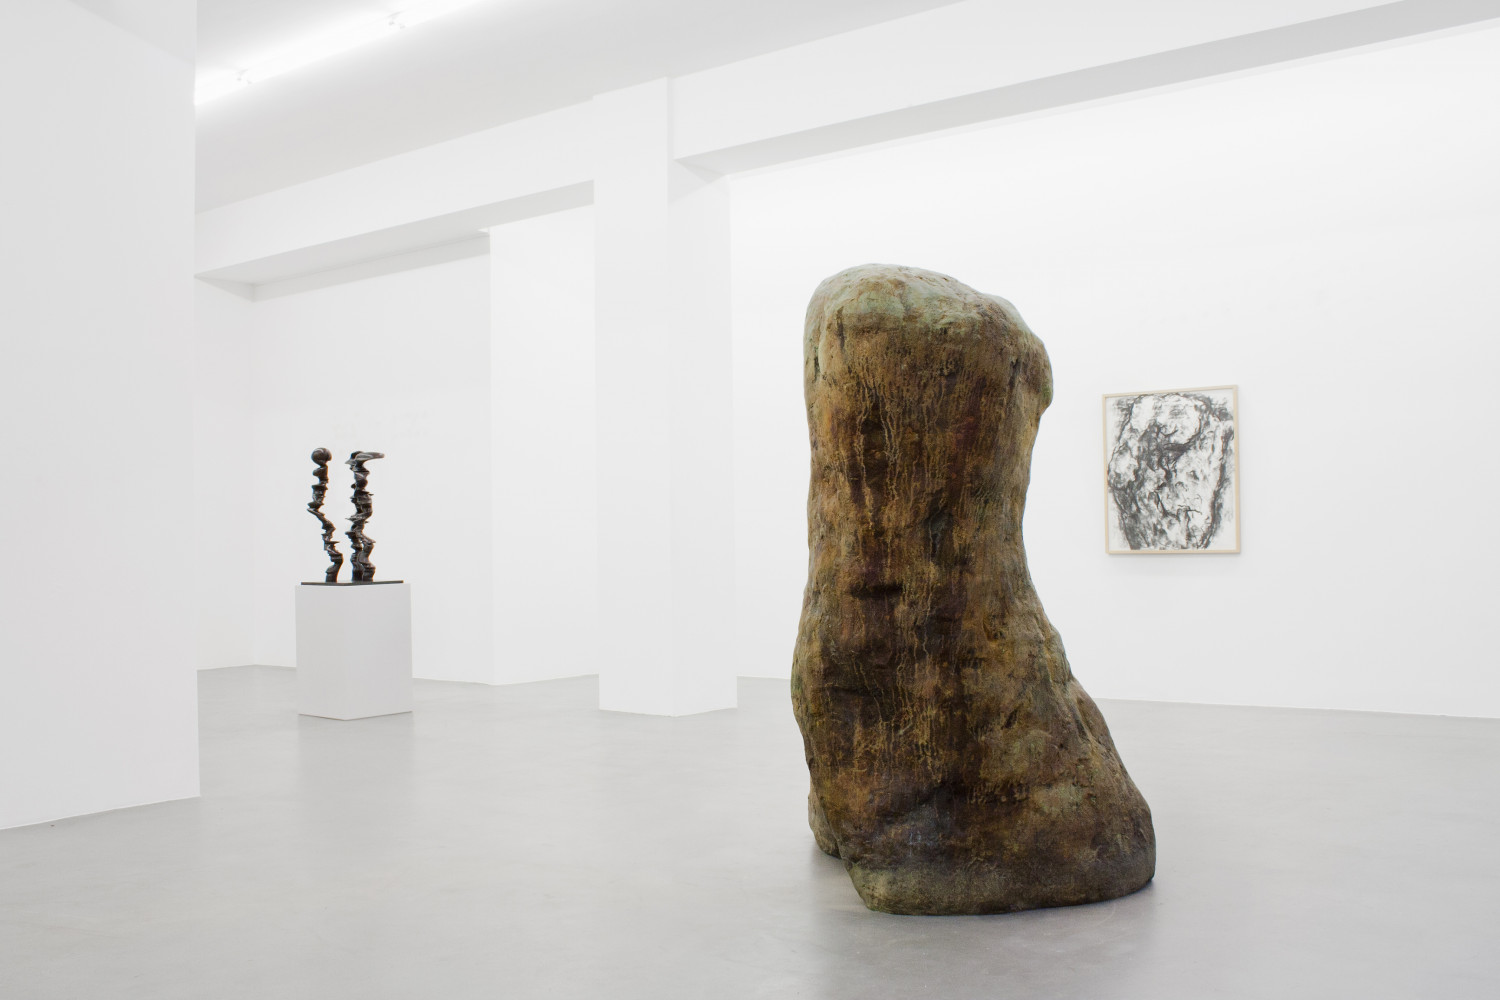 Tony Cragg, William Tucker, ‘Figure – Tony Cragg - Martin Disler - Medardo Rosso - William Tucker - Rebecca Warren’, Installation view, Buchmann Galerie, 2015-2016